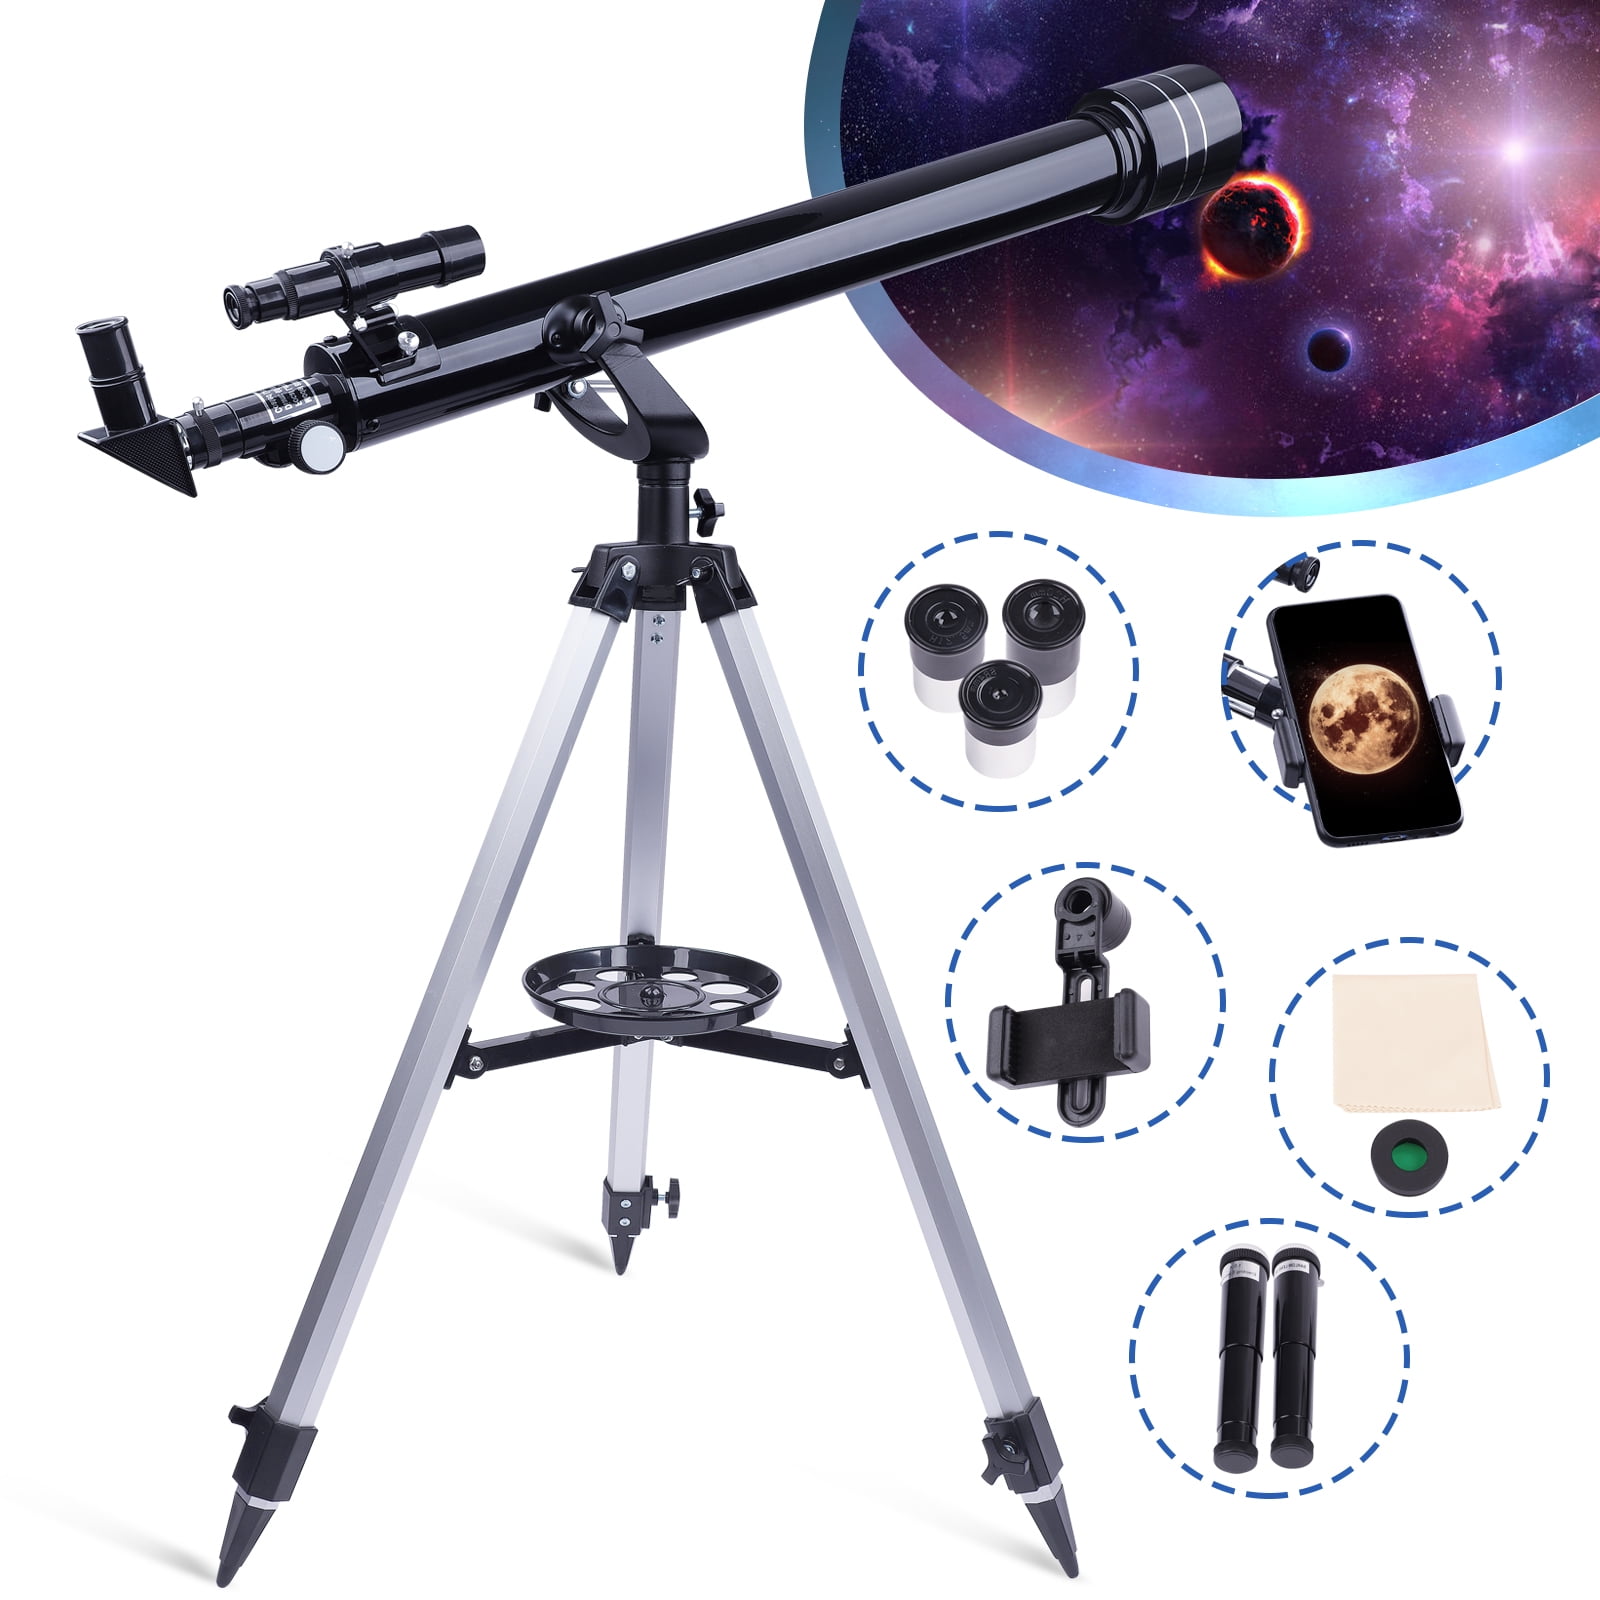 LAKWAR Telescope 60mm Aperture 800mm-Refractor Telescope with Phone Adapter, Beginner Telescope for Kids, Adults Astronomy,Christmas Gift